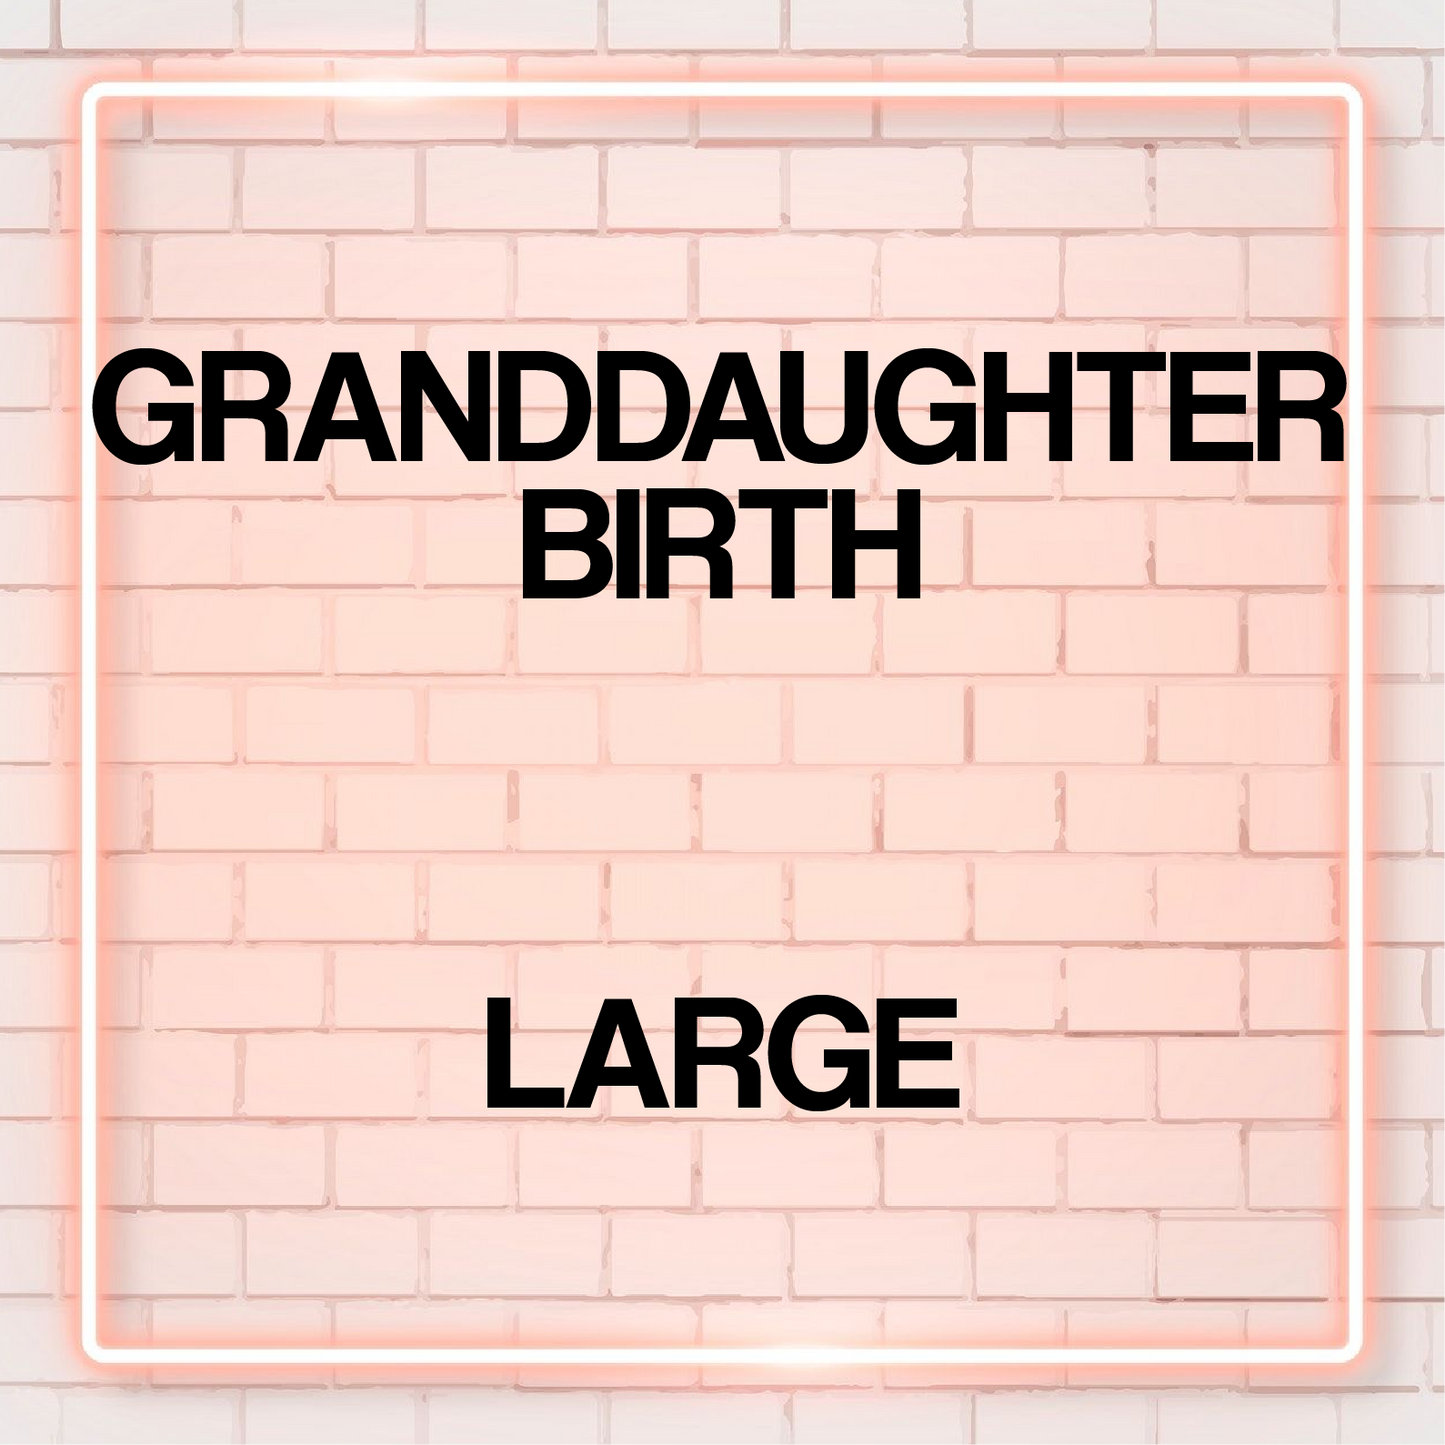 Birth - Granddaughter